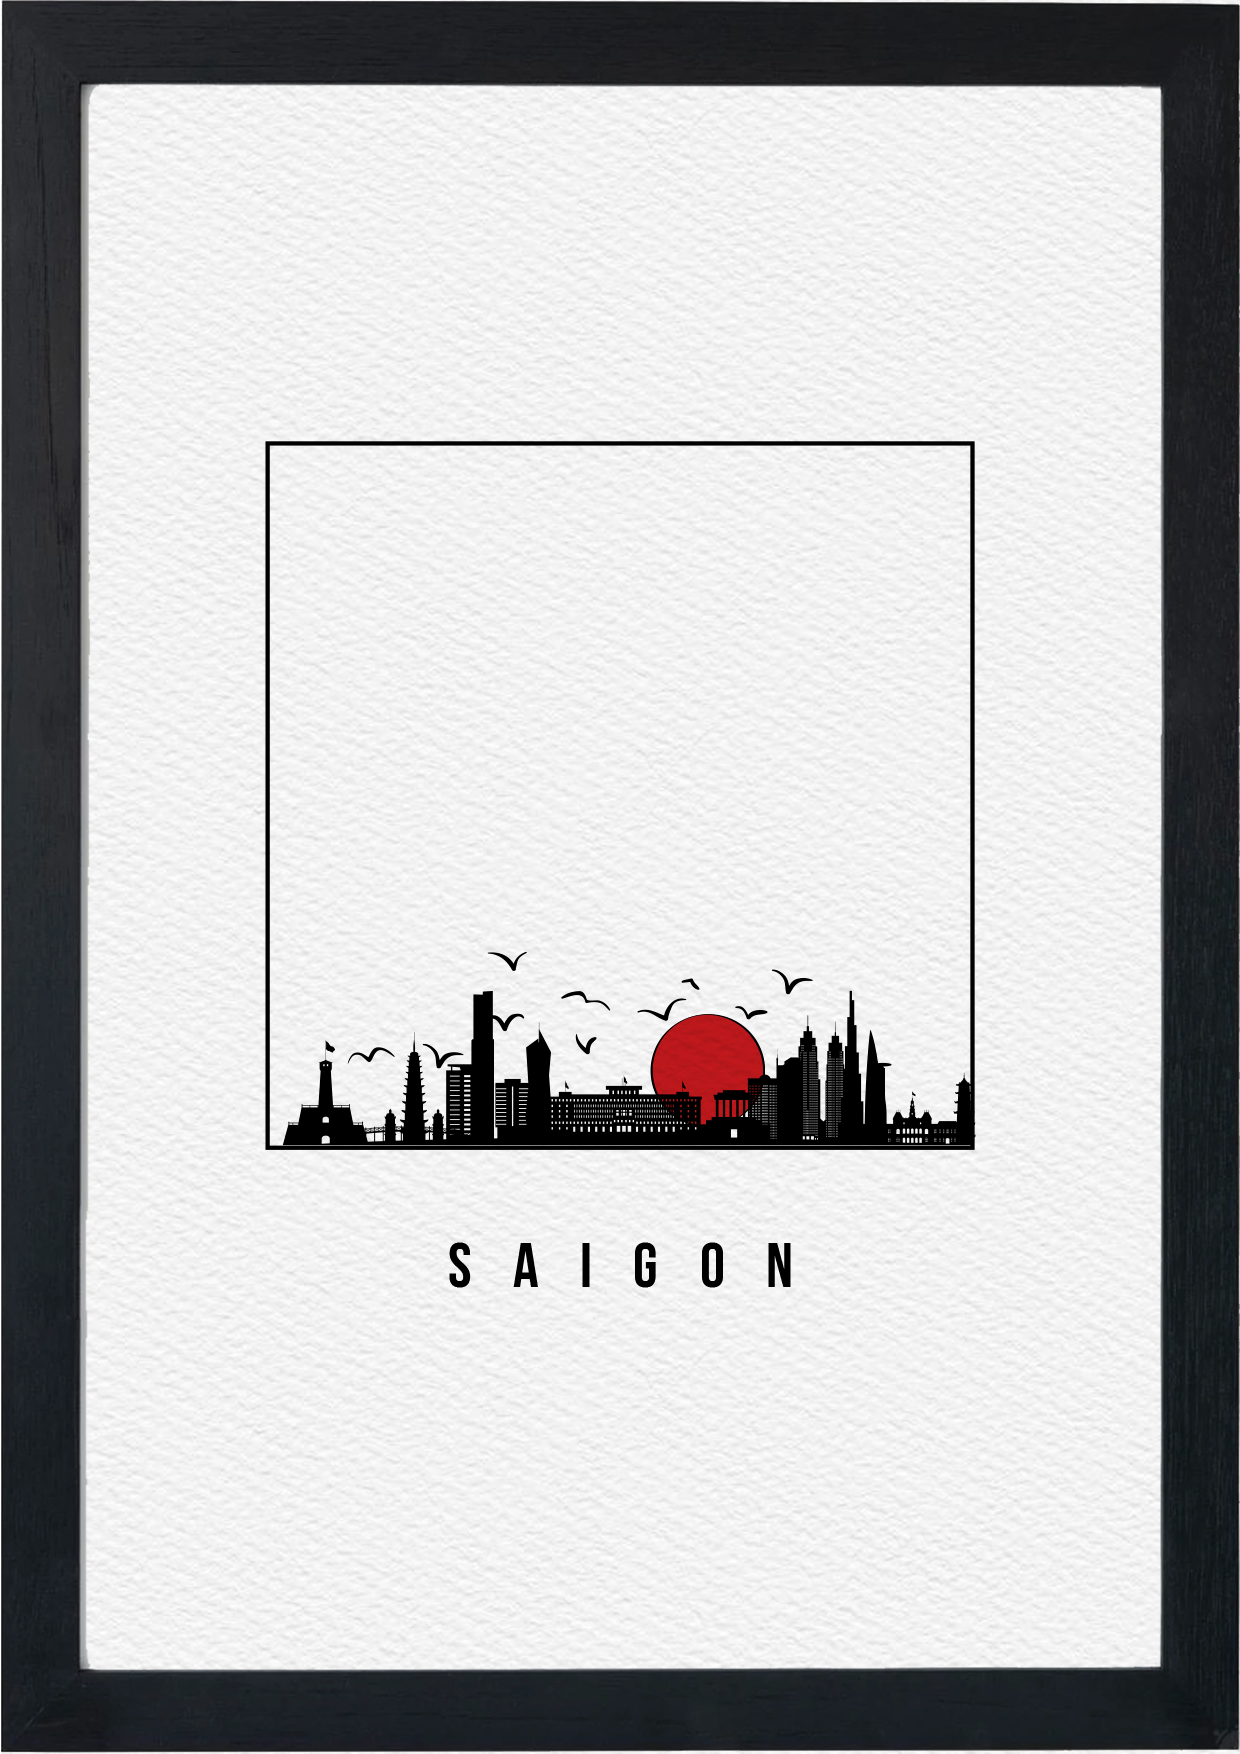  Walart Poster - Saigon 